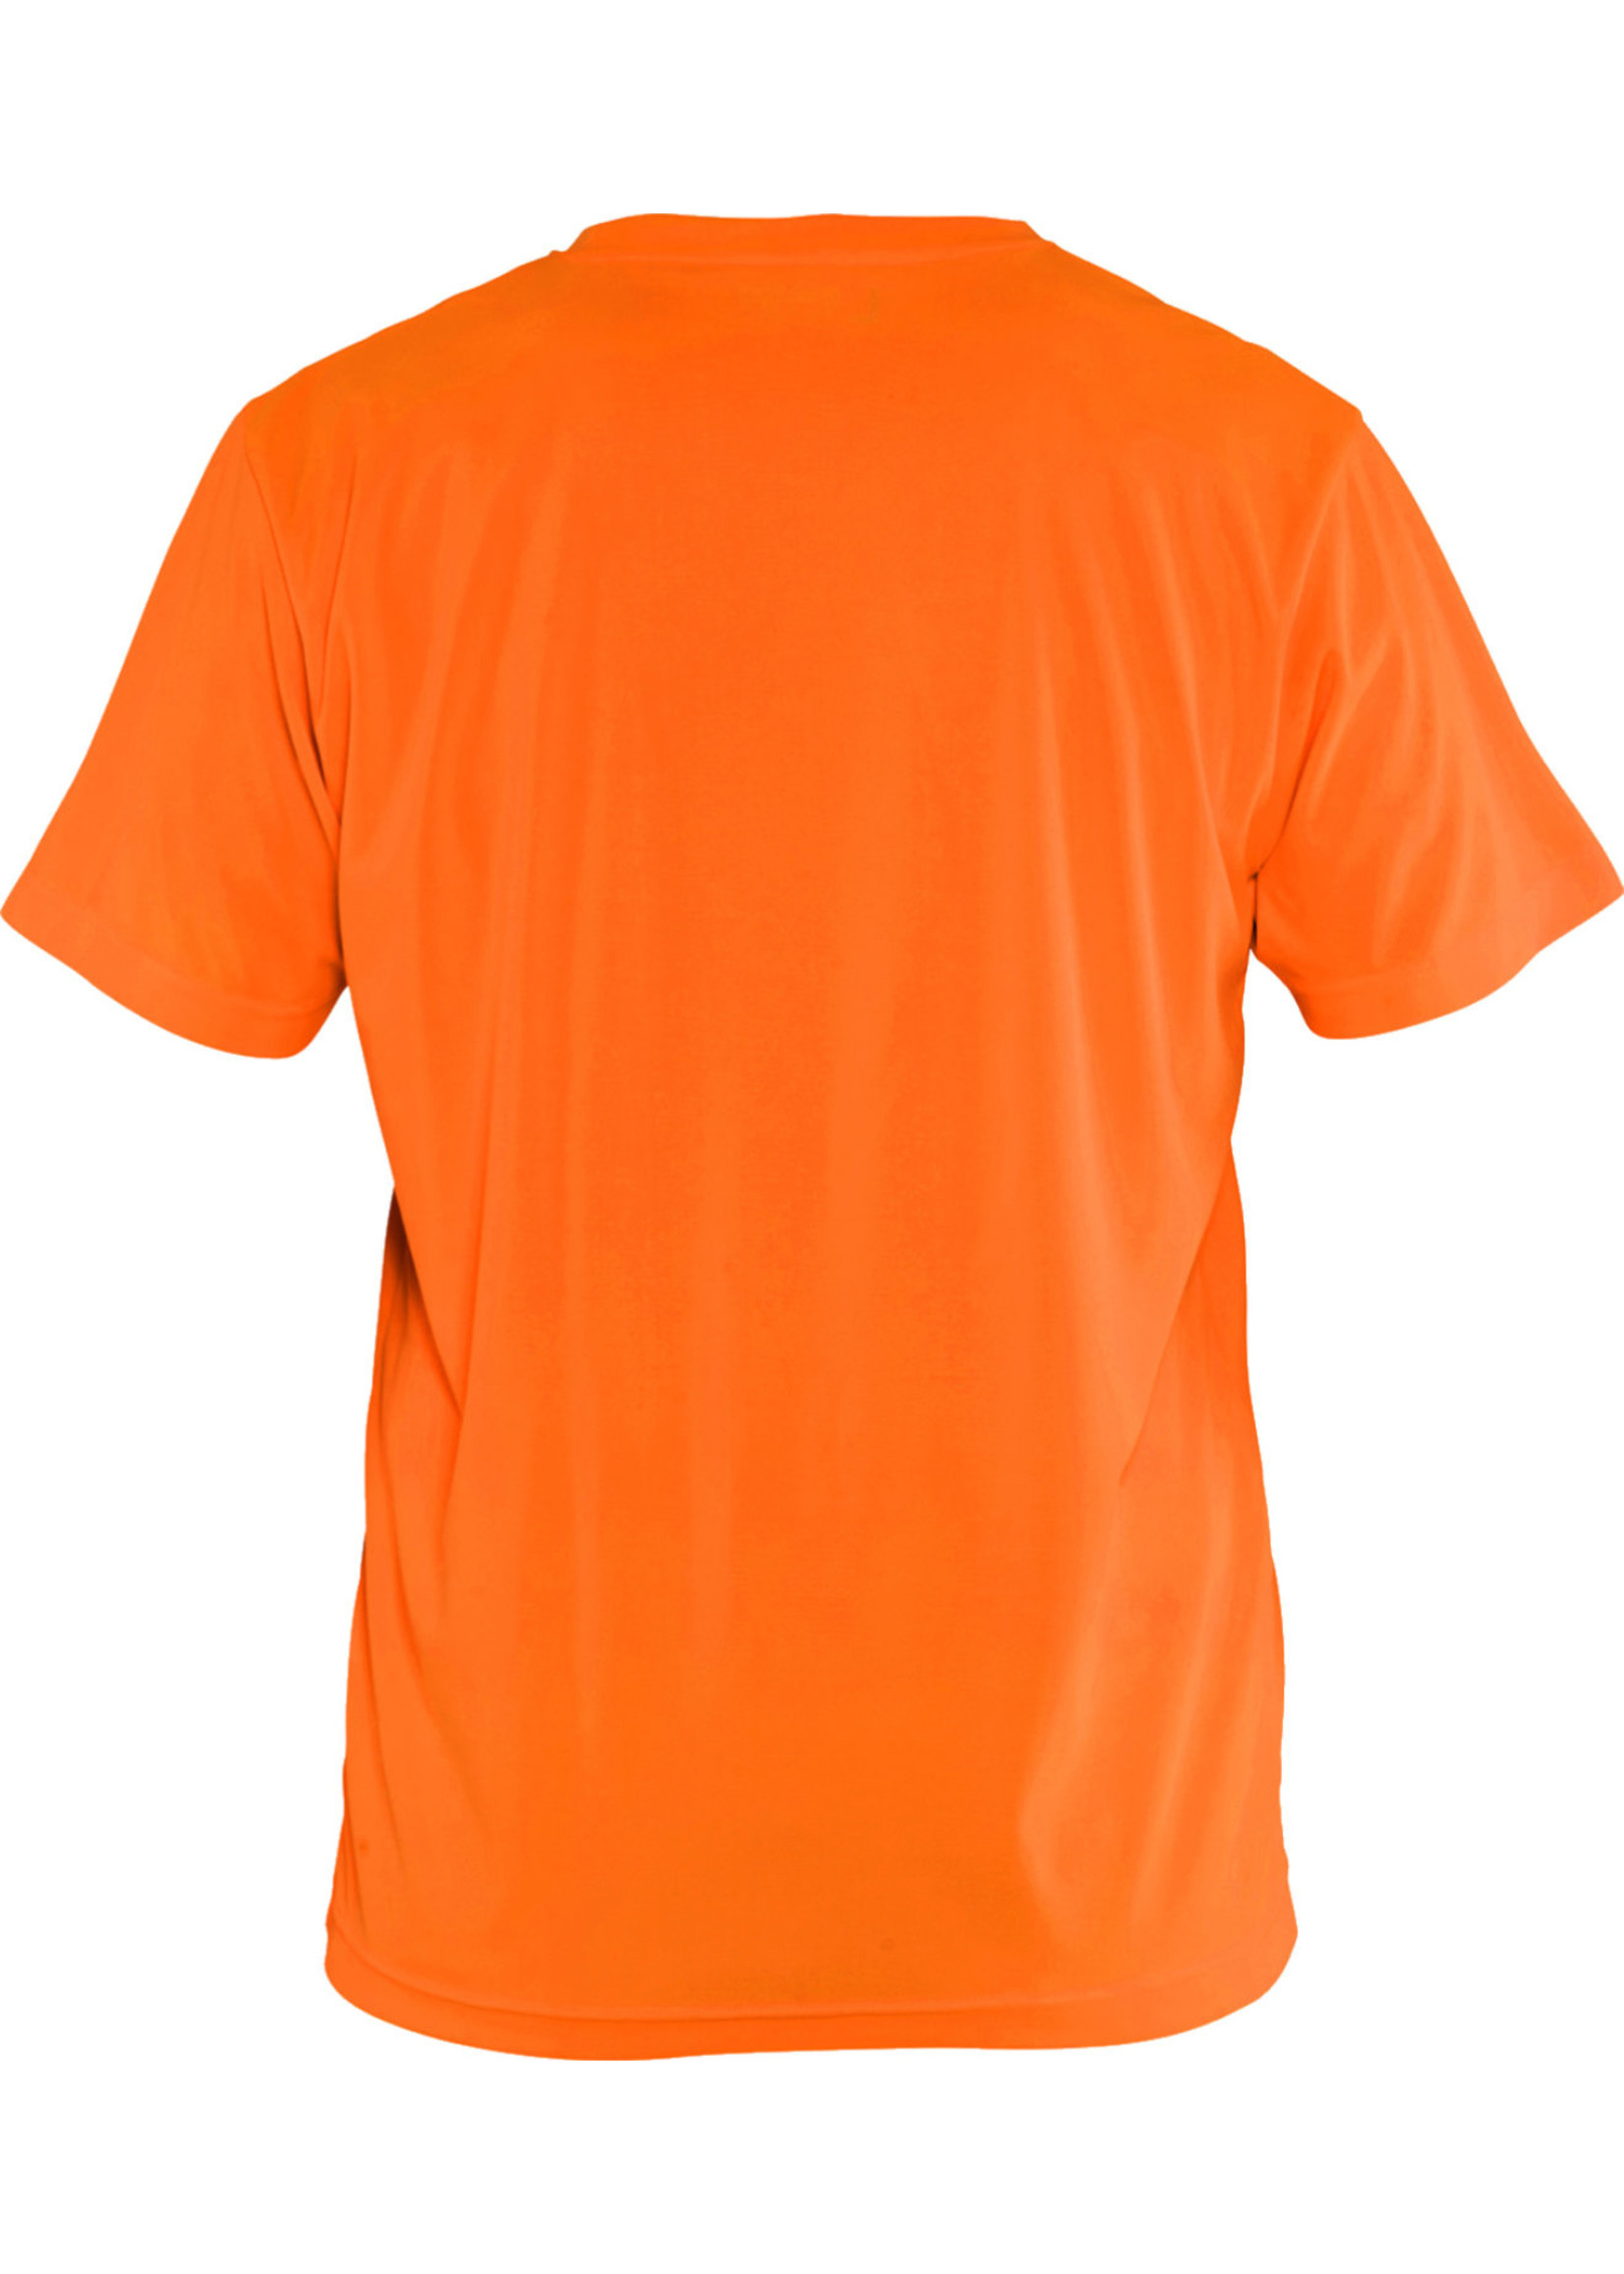 Blåkläder T-shirt Day Visible, fluor geel of oranje